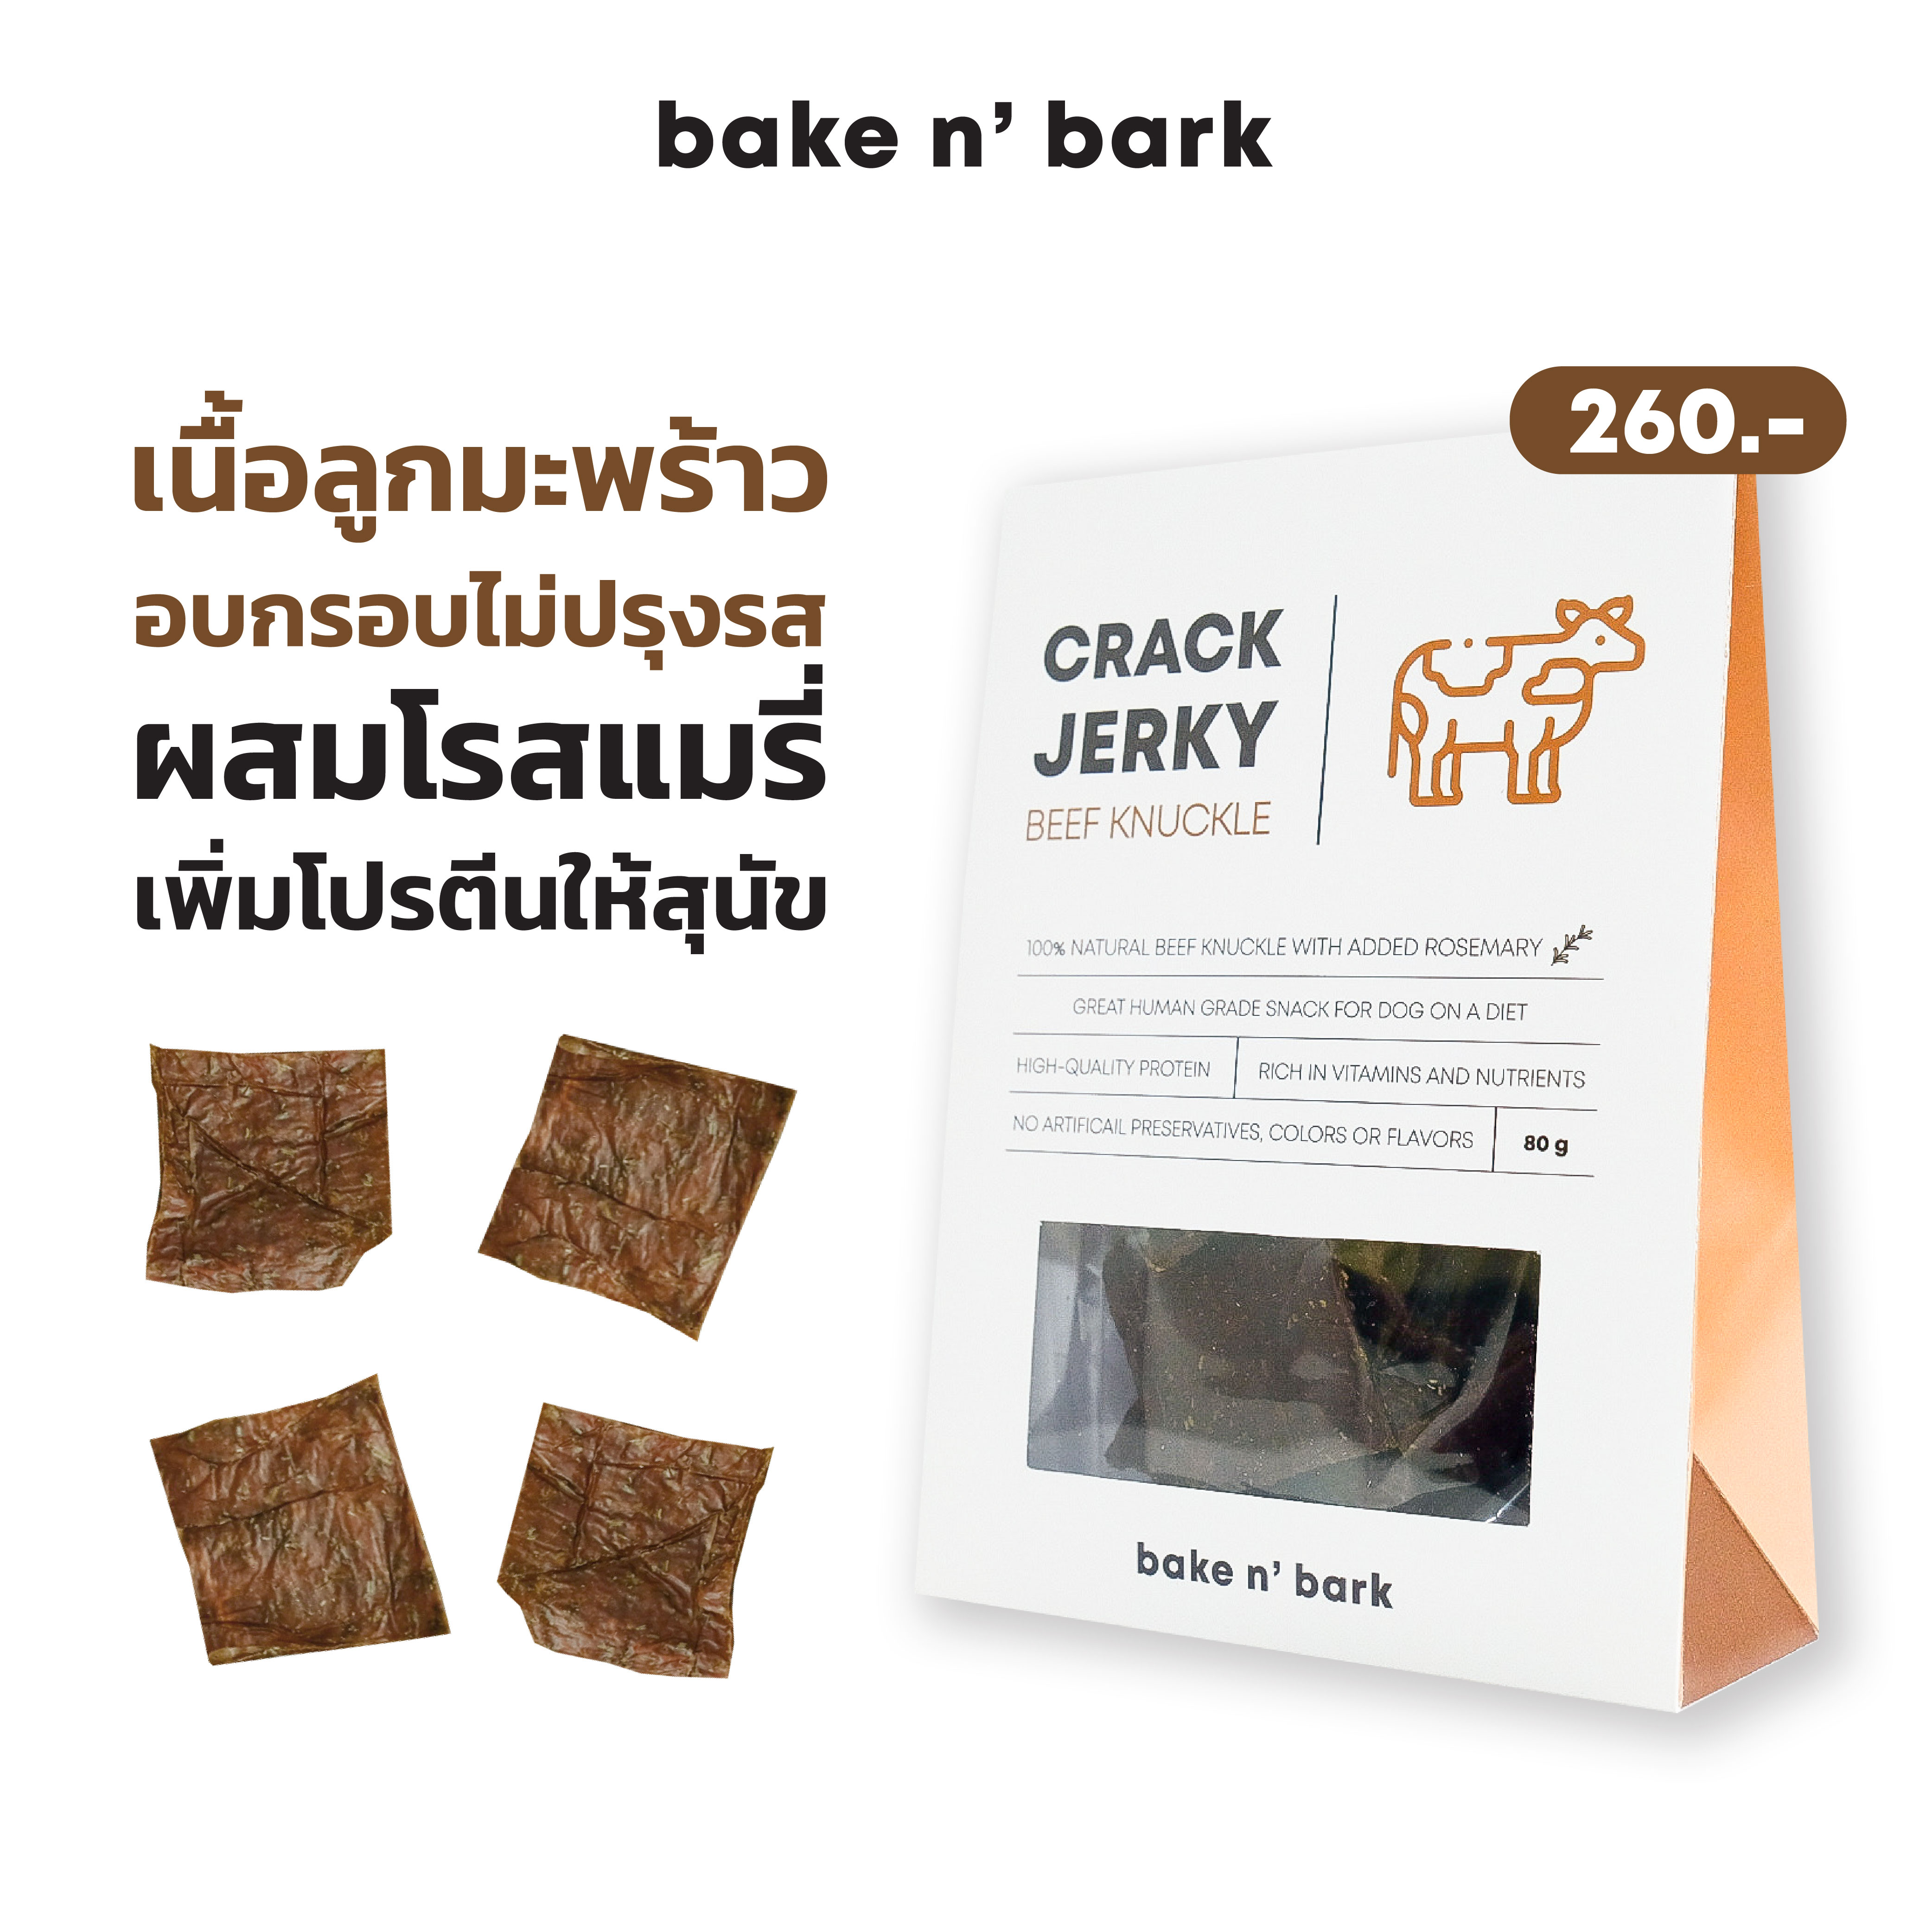 bakenbark | Cracky Jerky Beef Knuckle ขนมสุนัข เนื้อลูกมะพร้าวอบกรอบไม่ปรุงรส ผสมโรสแมรี่ เพิ่มโปรตีนให้น้องหมา 260 บาท